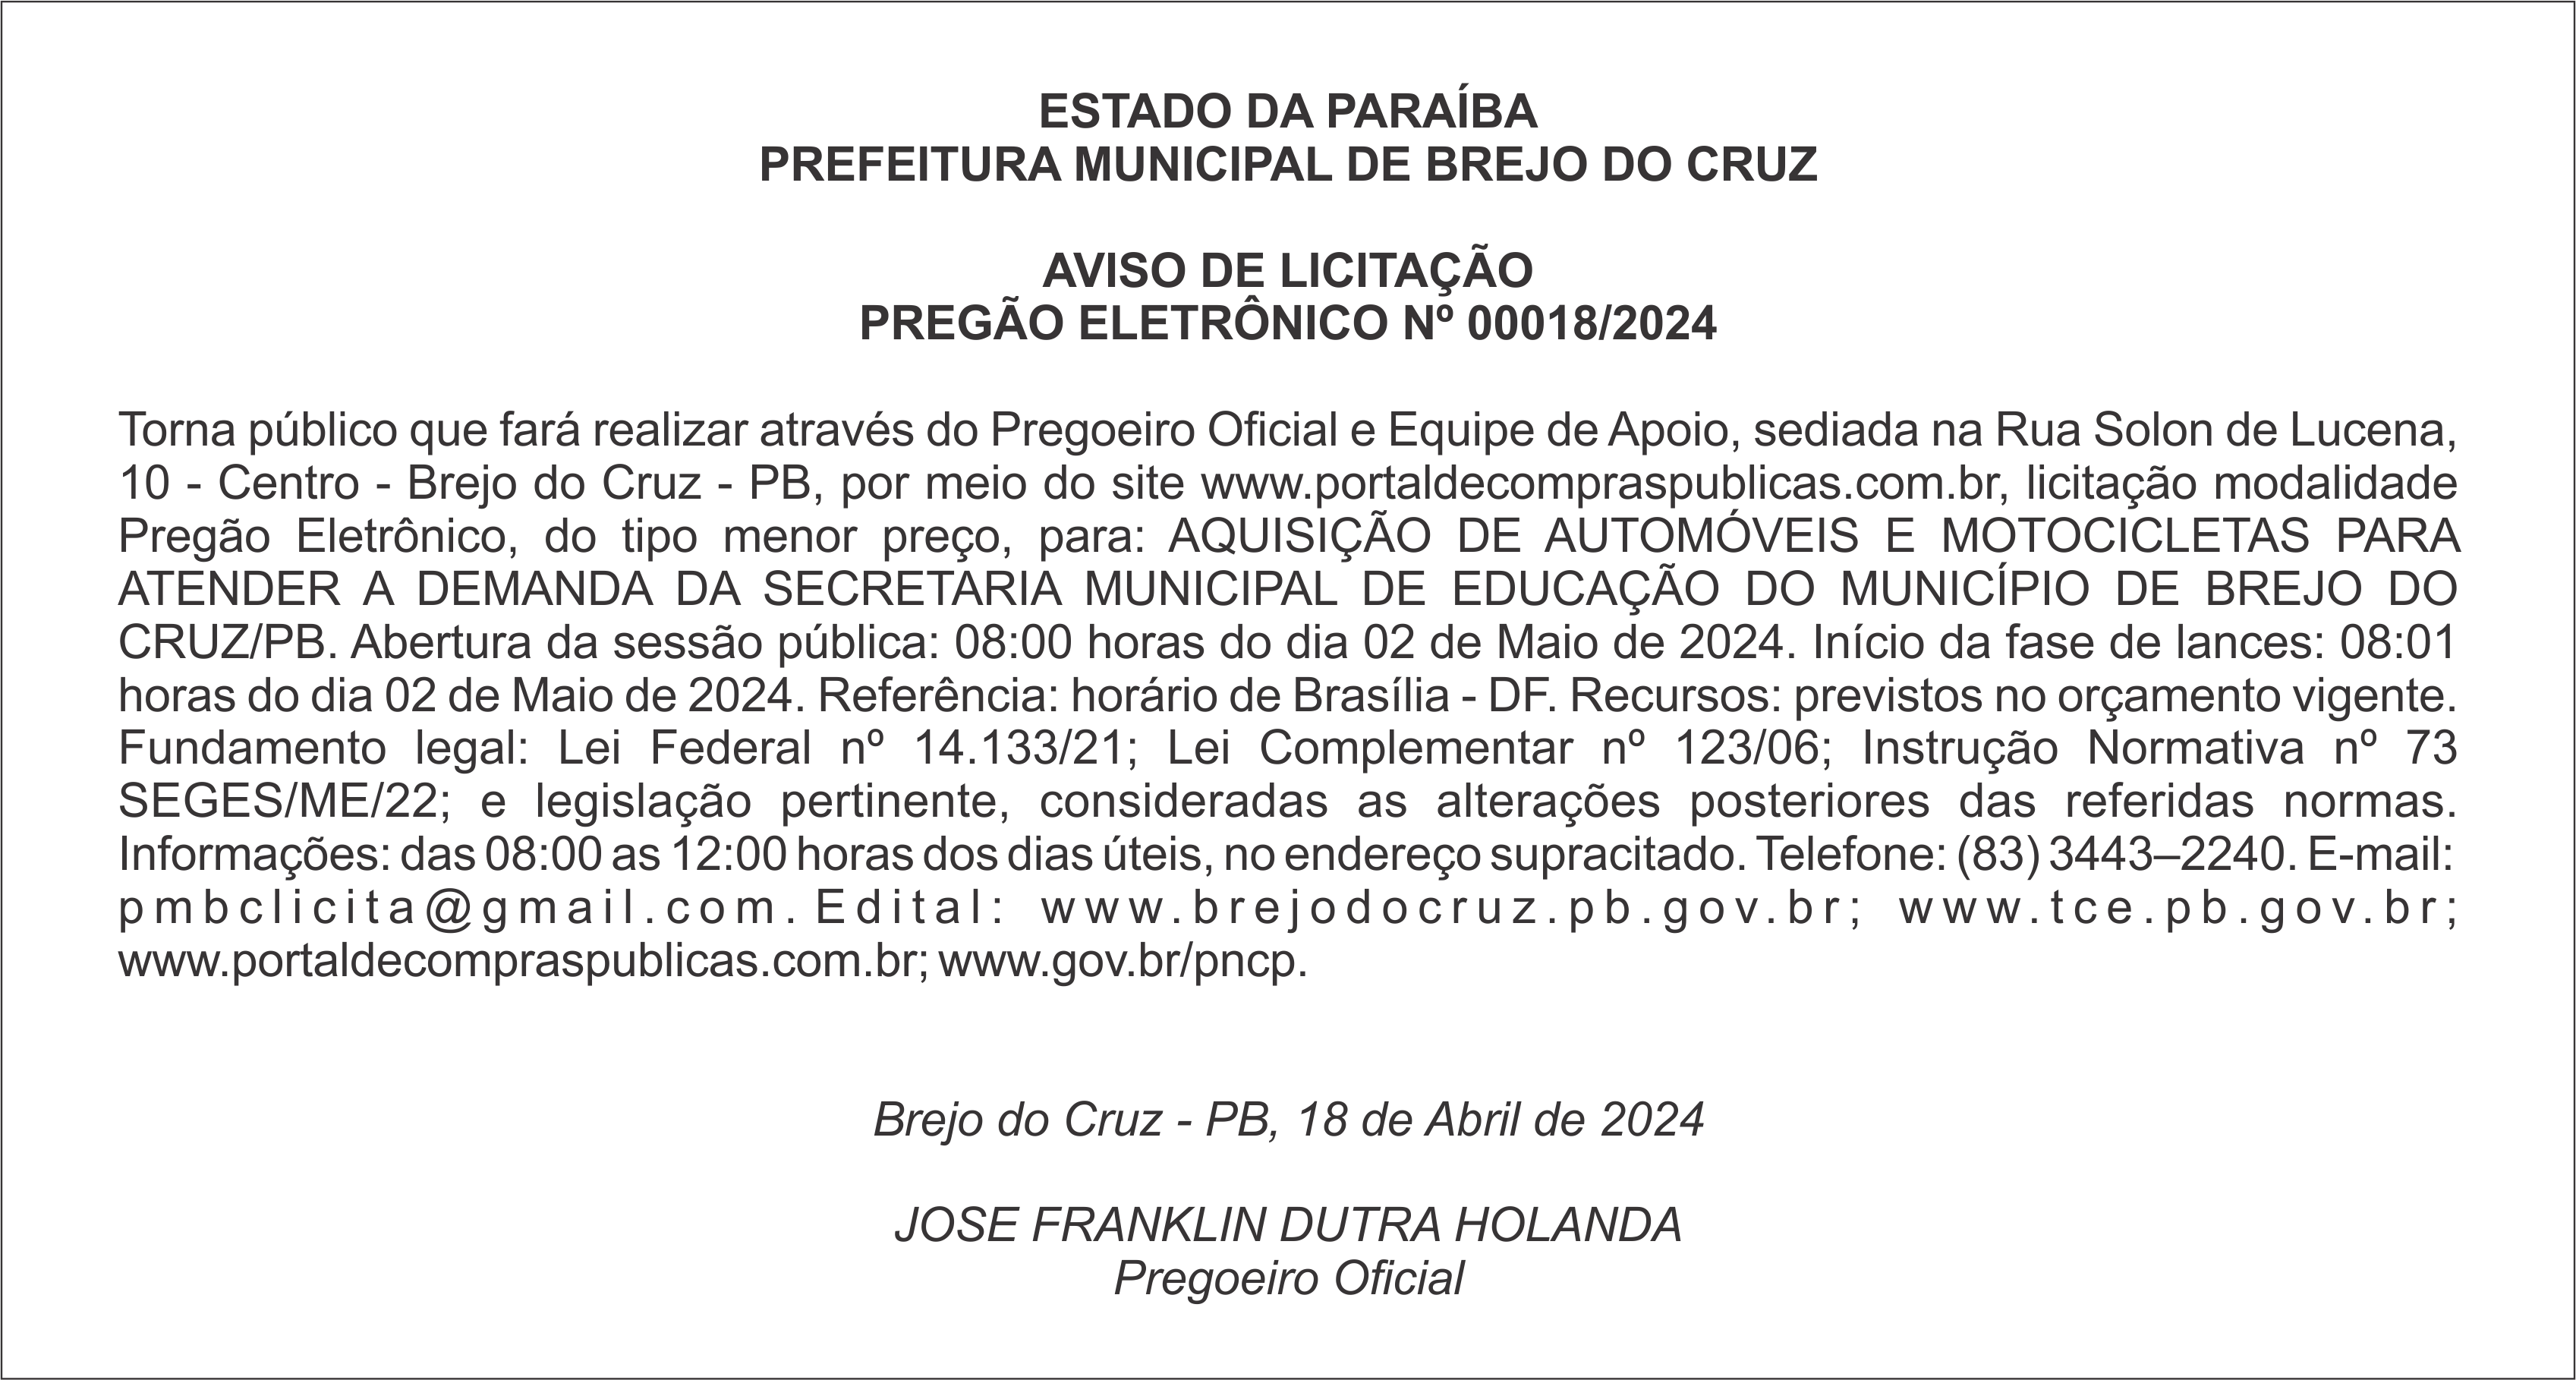 PREFEITURA MUNICIPAL DE BREJO DO CRUZ – AVISO DE LICITAÇÃO – PREGÃO ELETRÔNICO Nº 00018/2024